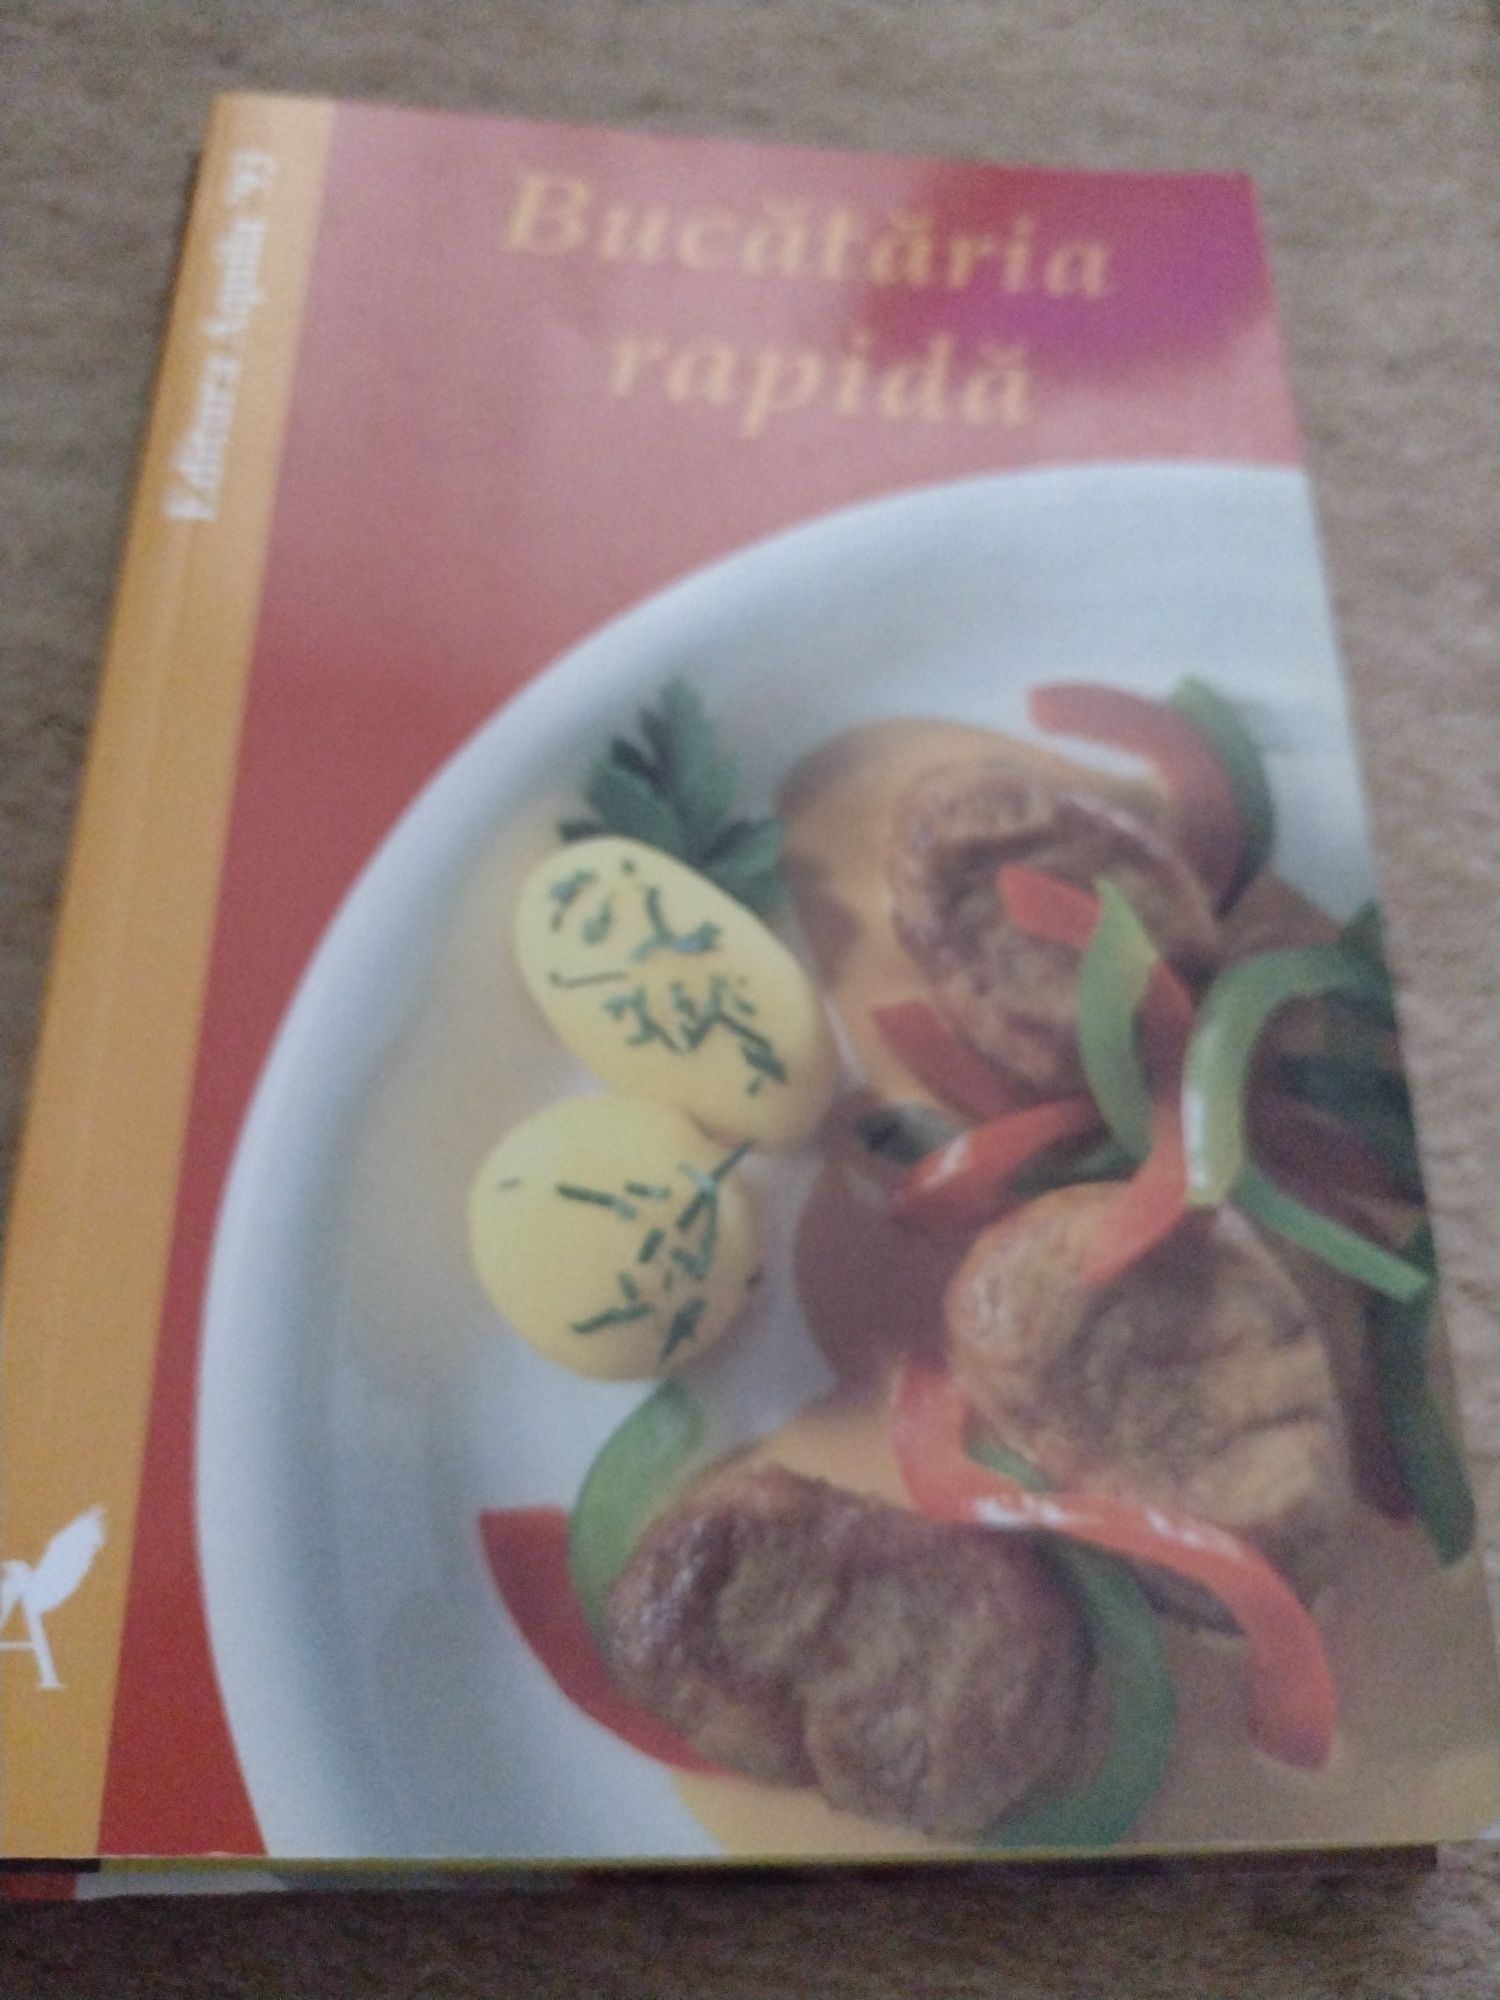 Cărți rețete culinare